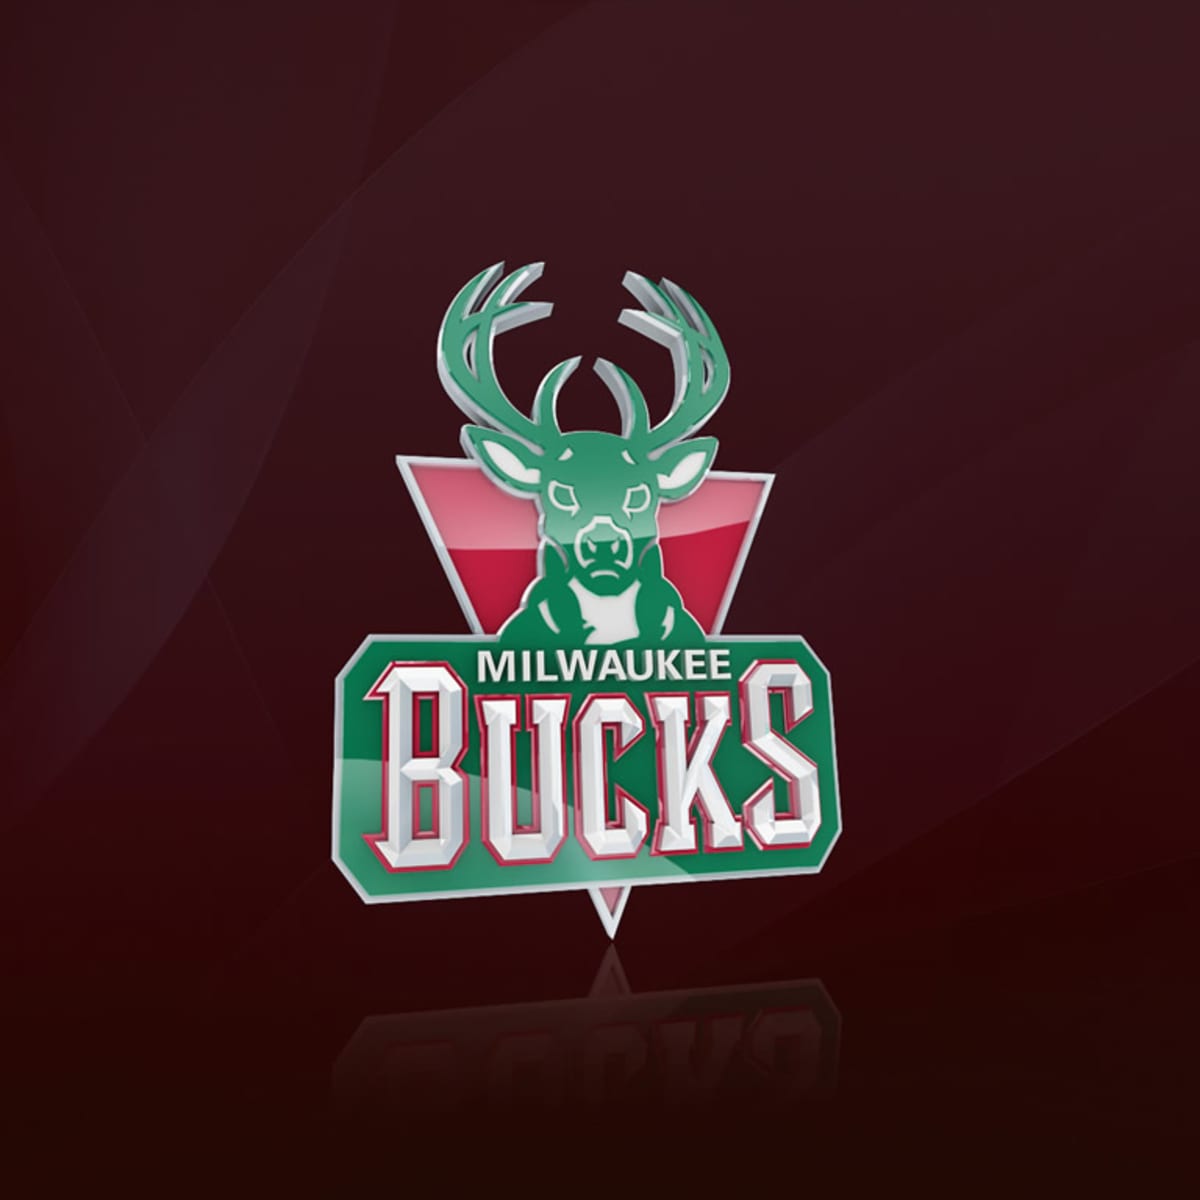 Milwaukee Bucks All-Stars through the years